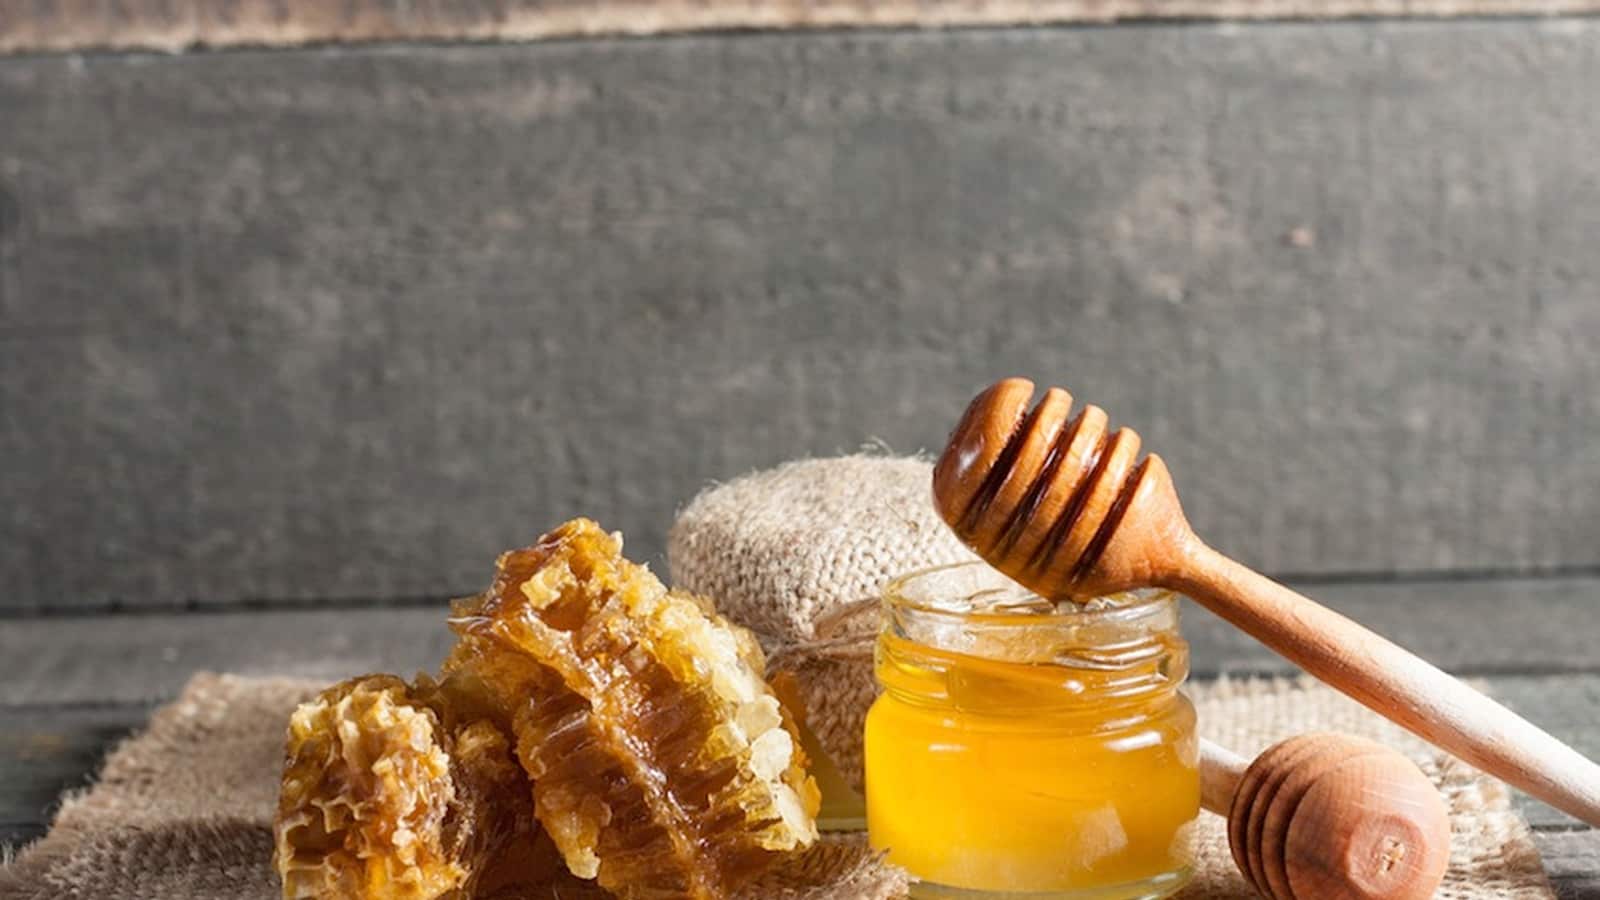 العسل الجبلي الأصلي؛ يستخدم لتحسين الحروق التغذية رحيق الازهار النباتات الطبيعية